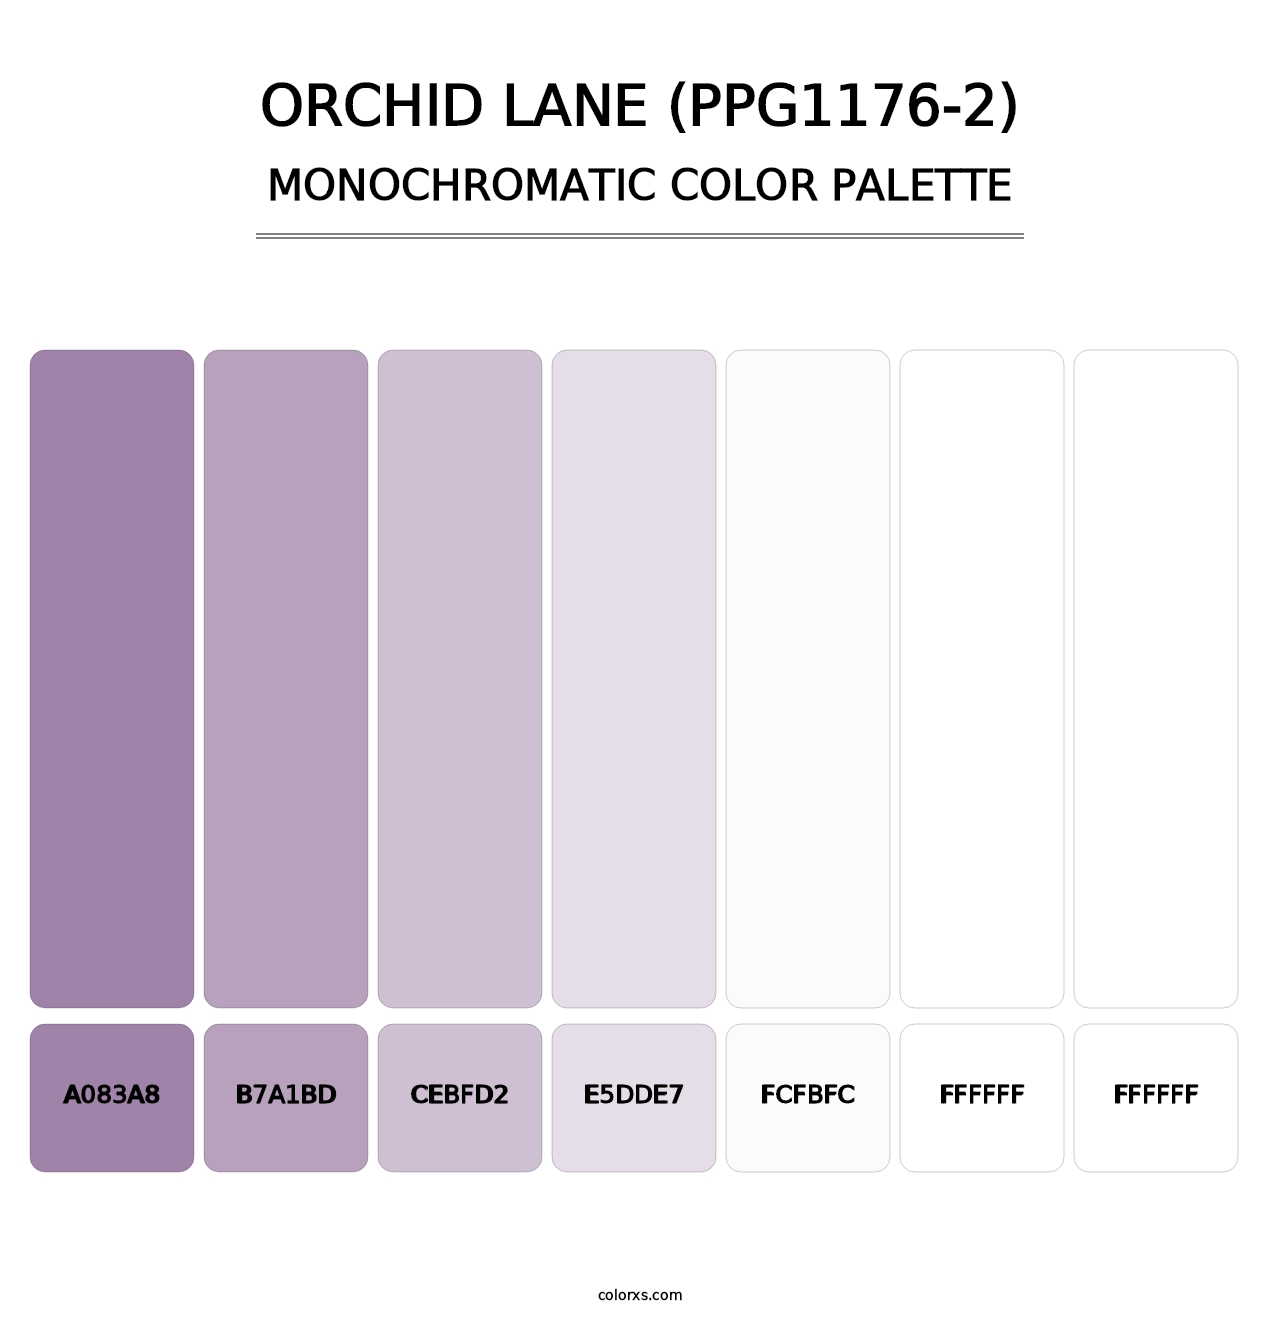 Orchid Lane (PPG1176-2) - Monochromatic Color Palette